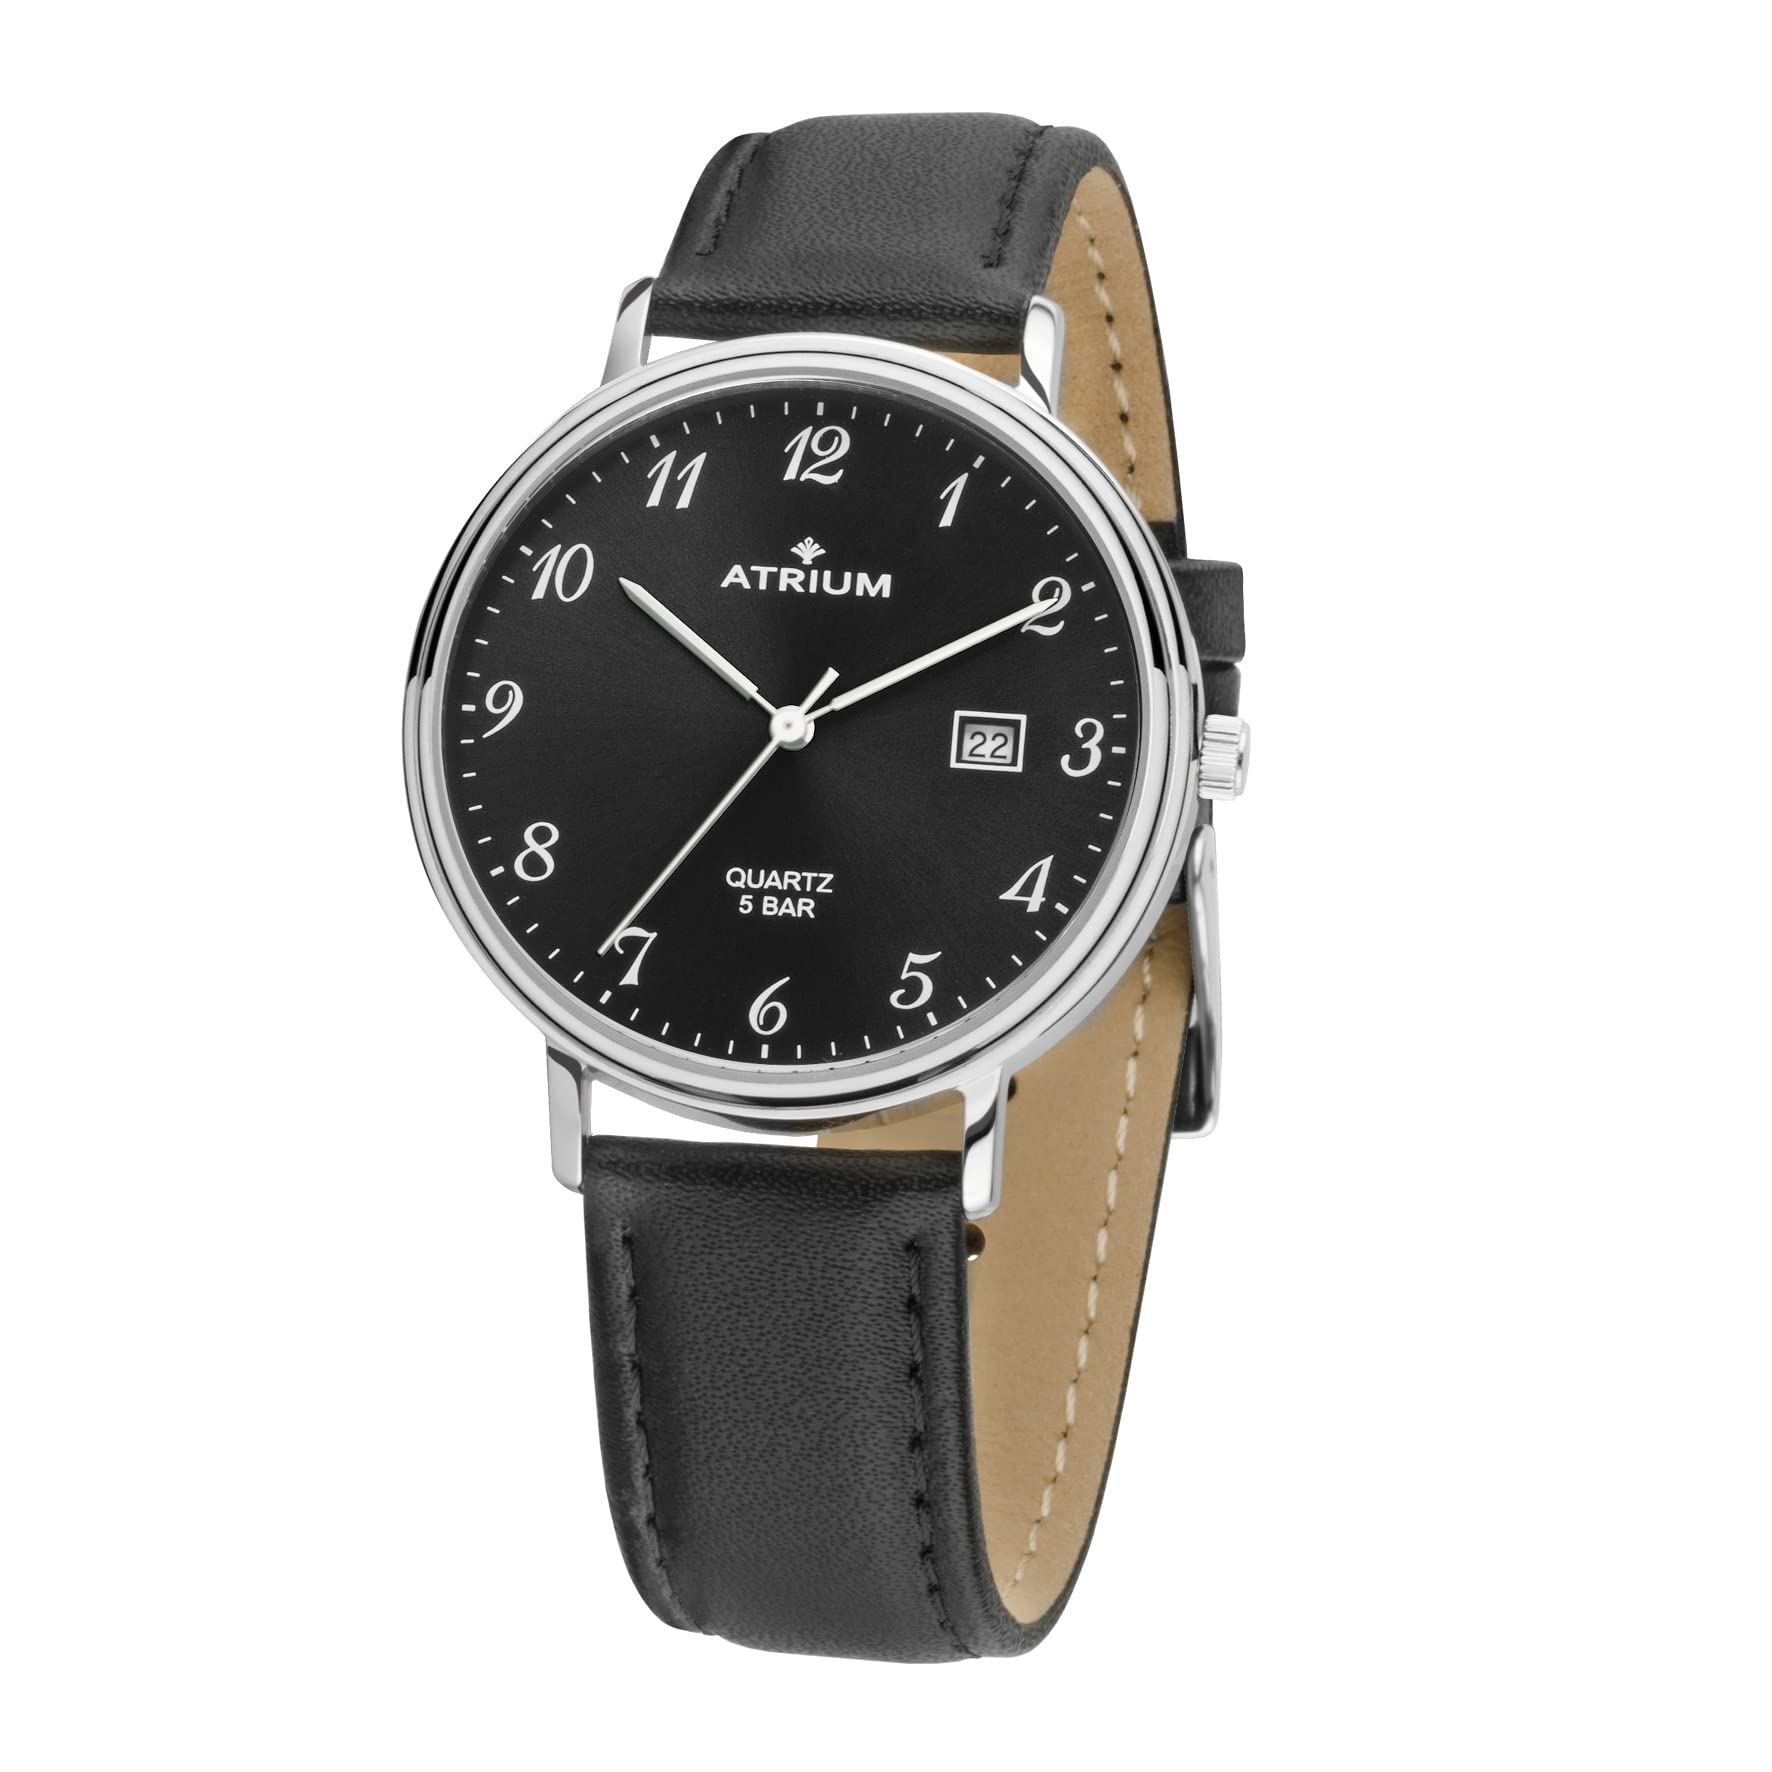 Atrium Herren-Armbanduhr Analog Quarz Edelstahl Datum Leder schwarzes Zifferblatt 5 bar A30-11